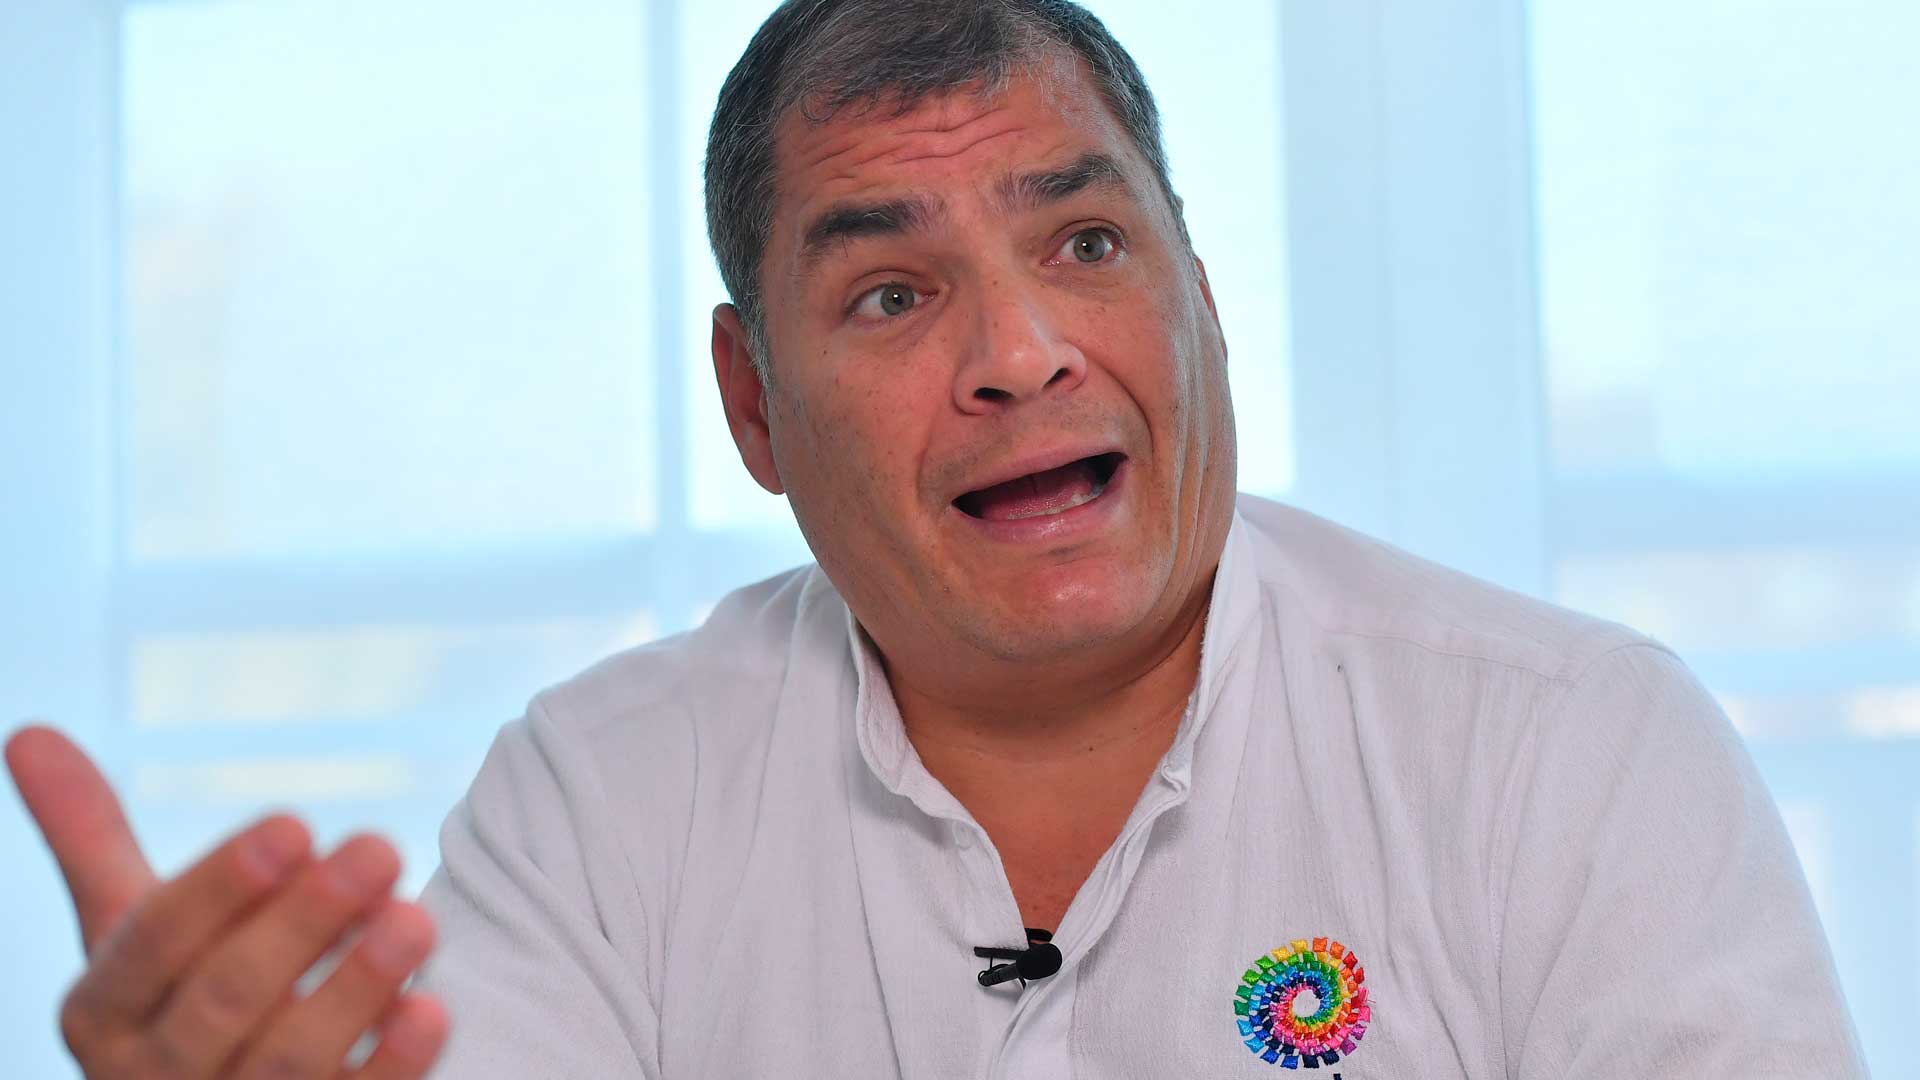 El expresidente ecuatoriano Correa pidió asilo en Bélgica en junio